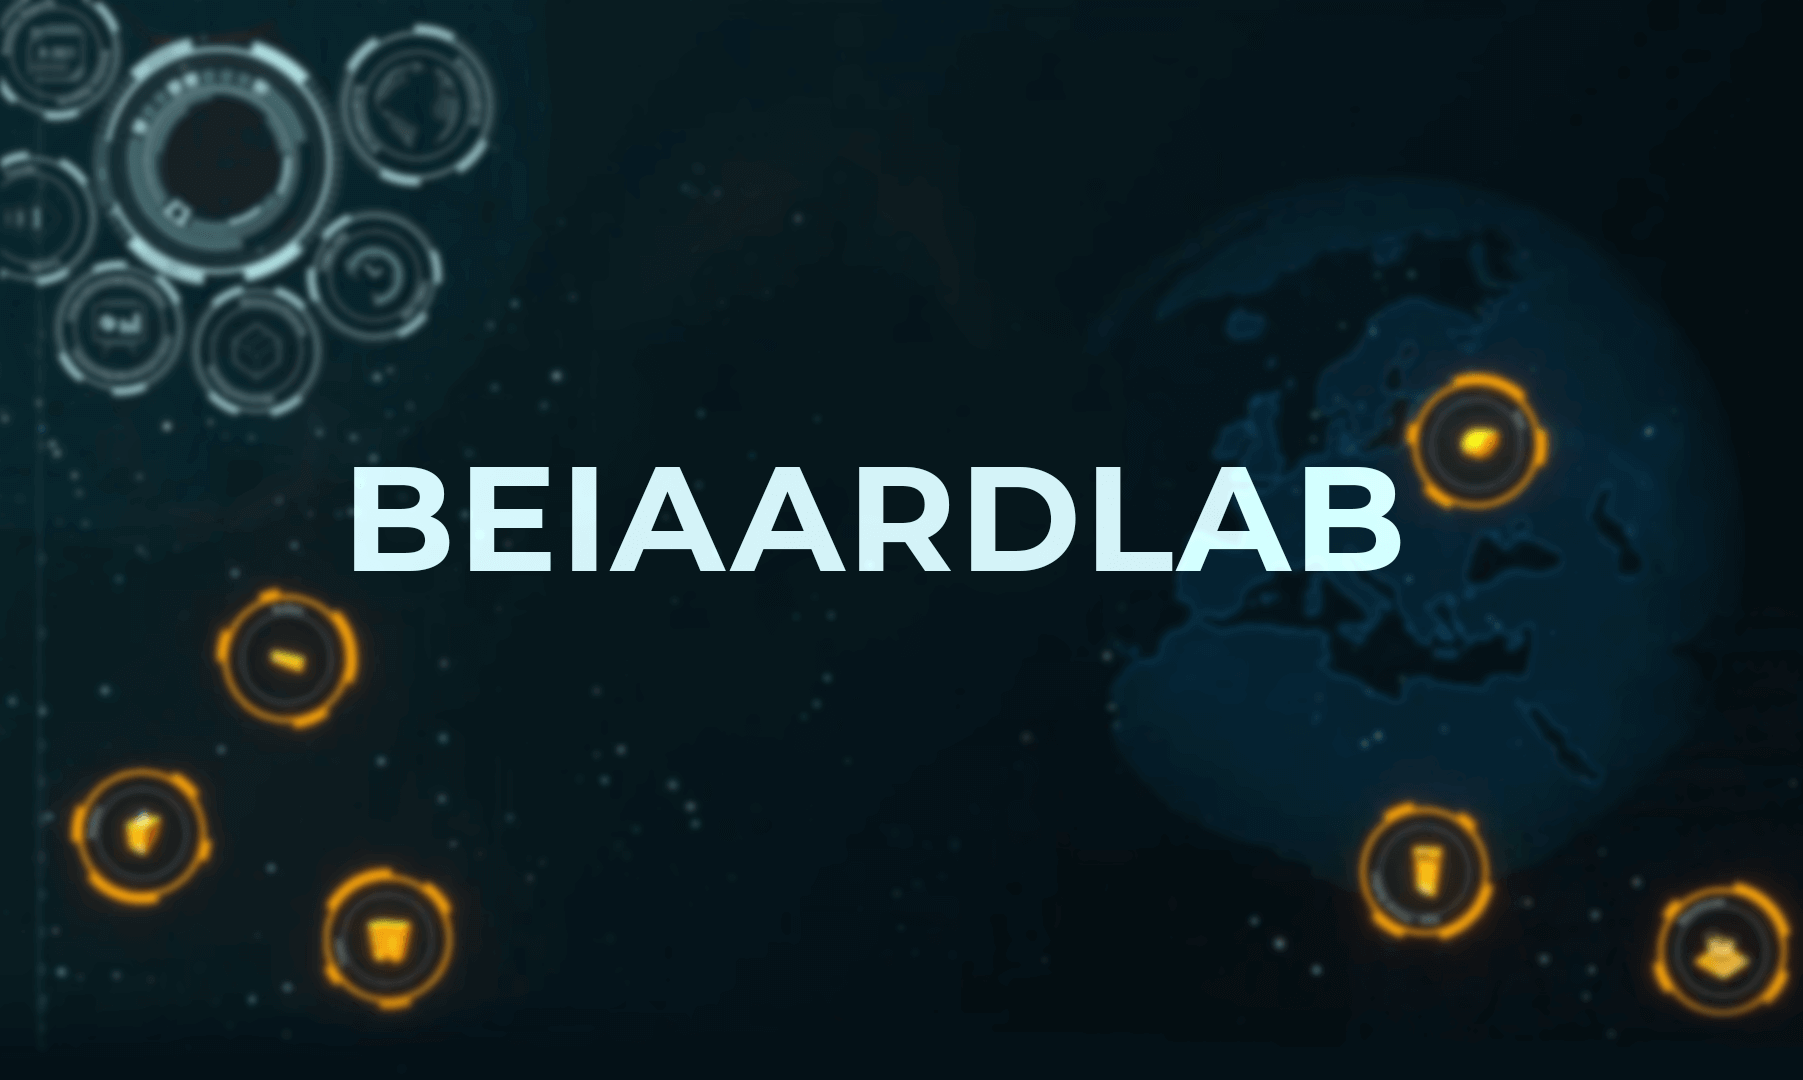 Beiaardlab is een consultancy kantoor voor elektronica, software en artificiële intelligentie.